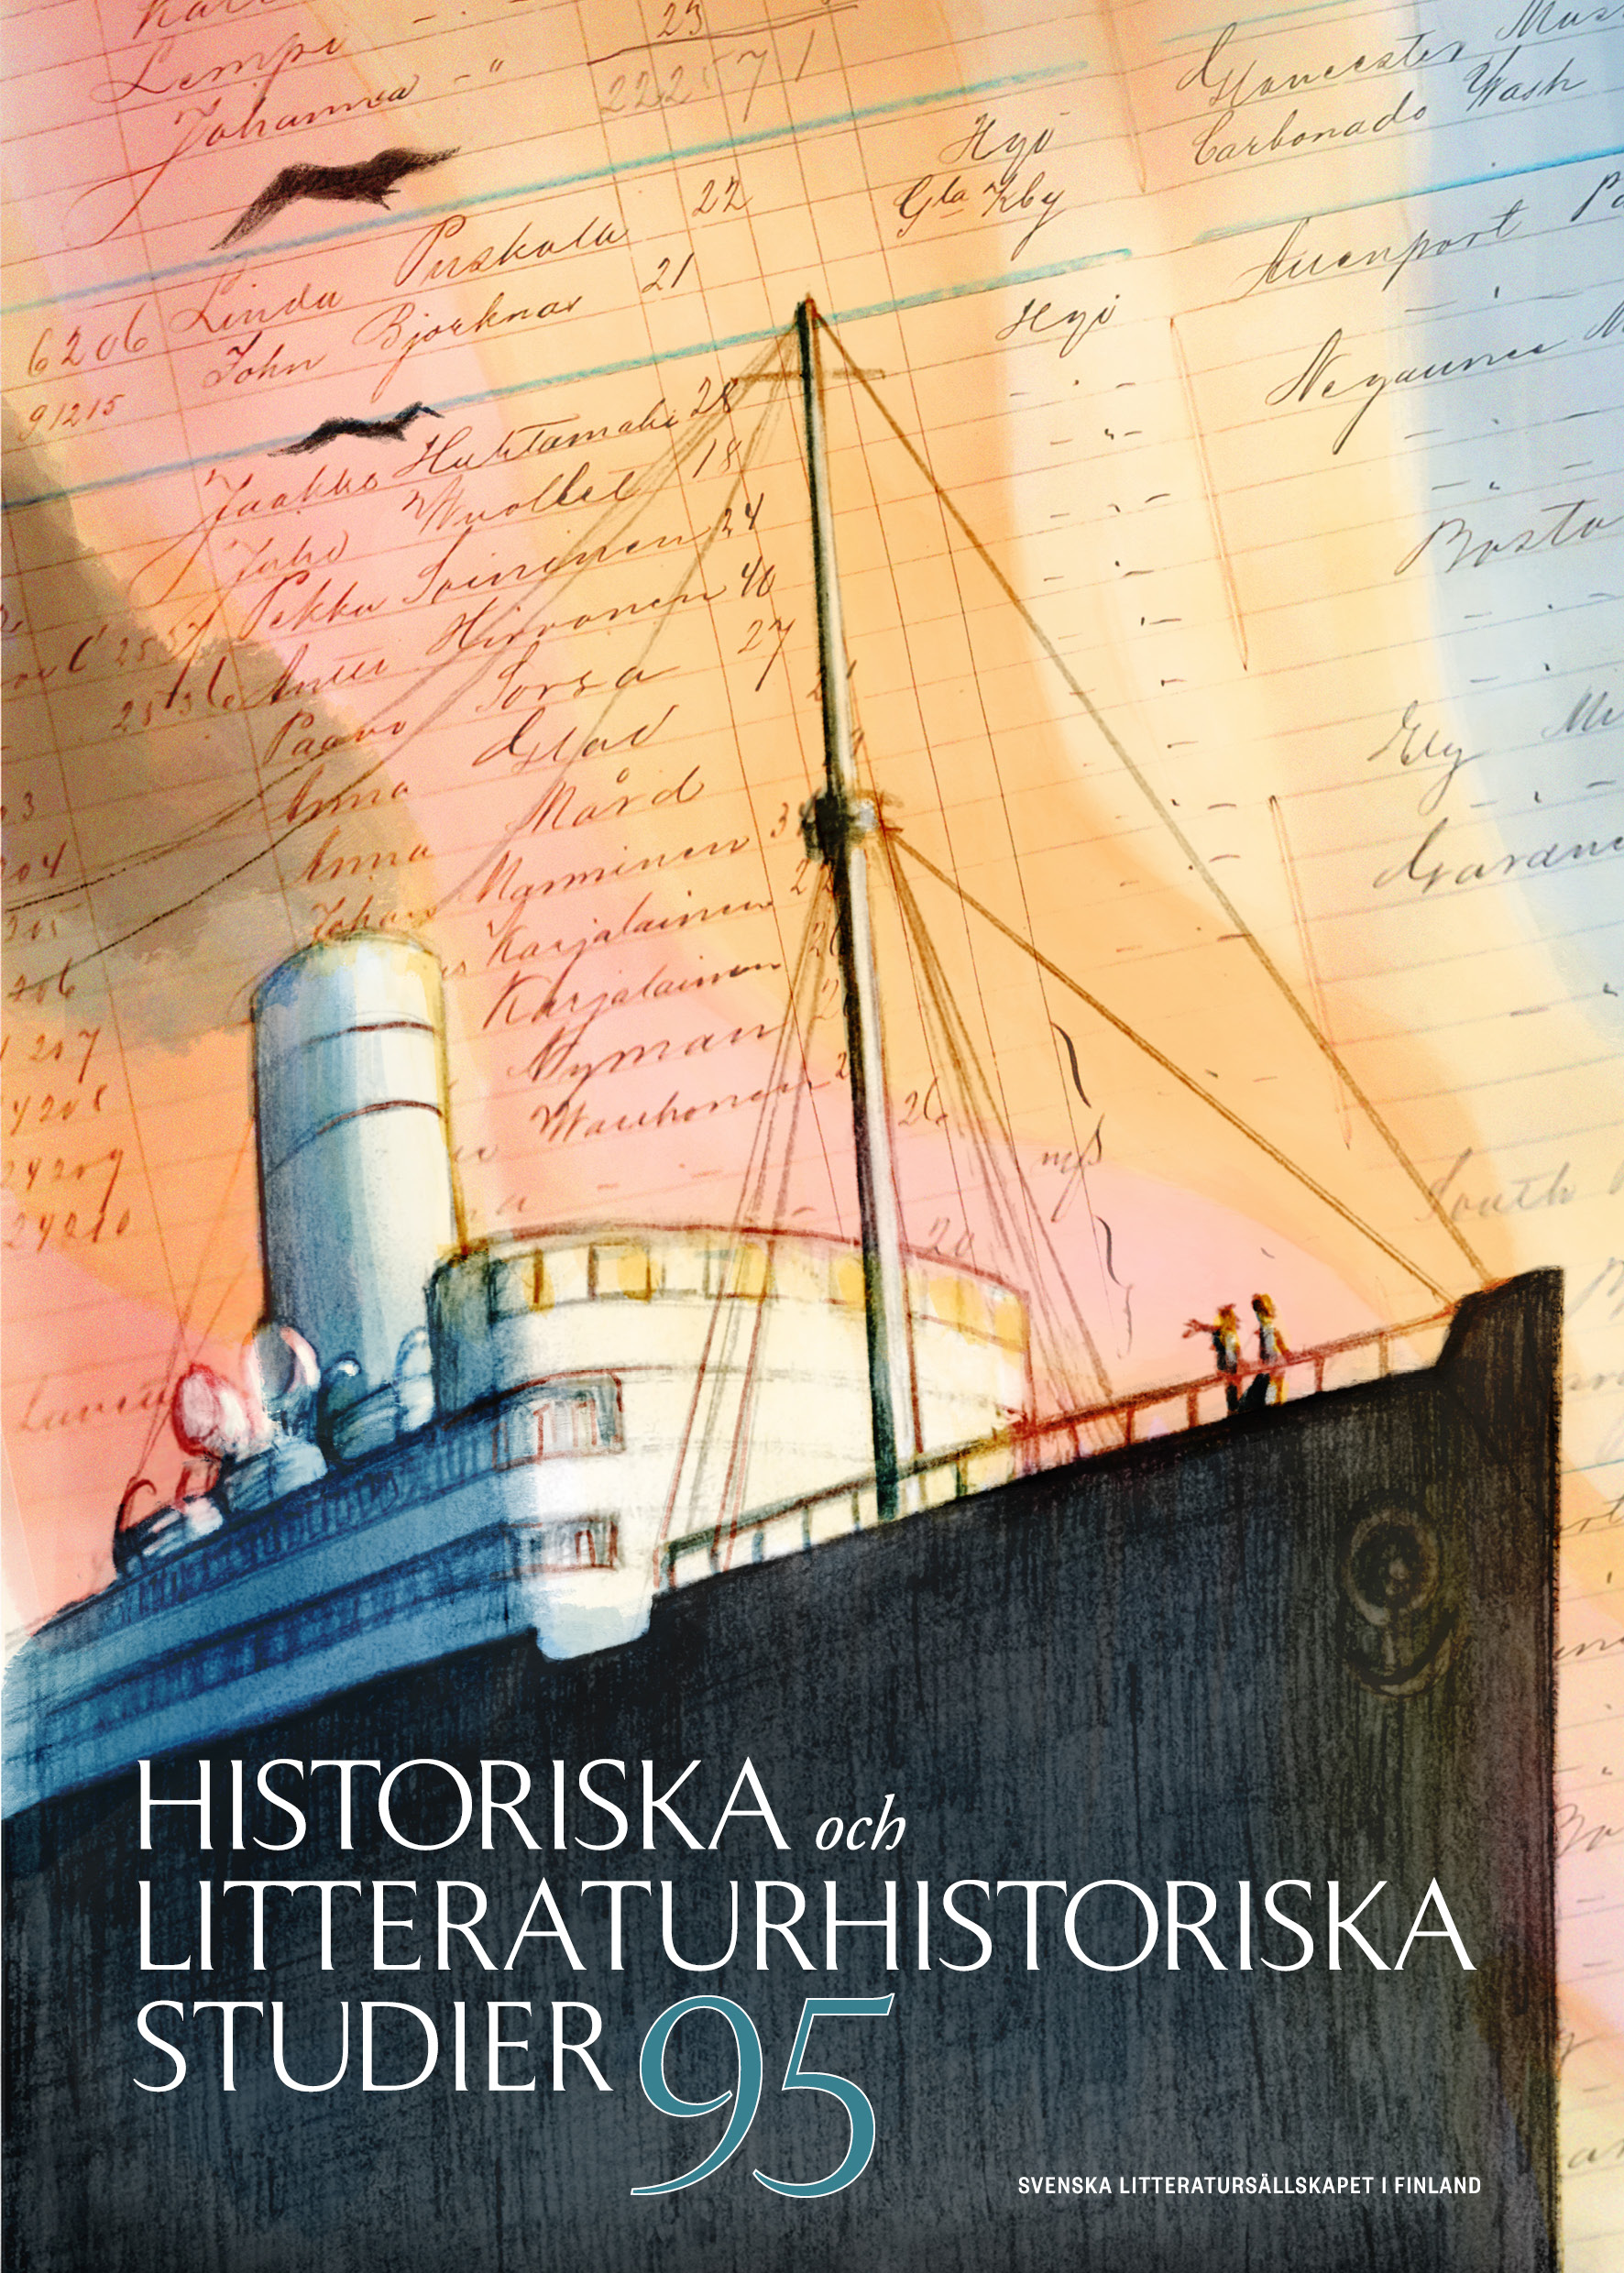 Omslag till Historiska och litteraturhistoriska studier 95, med teckning av ångbåt.